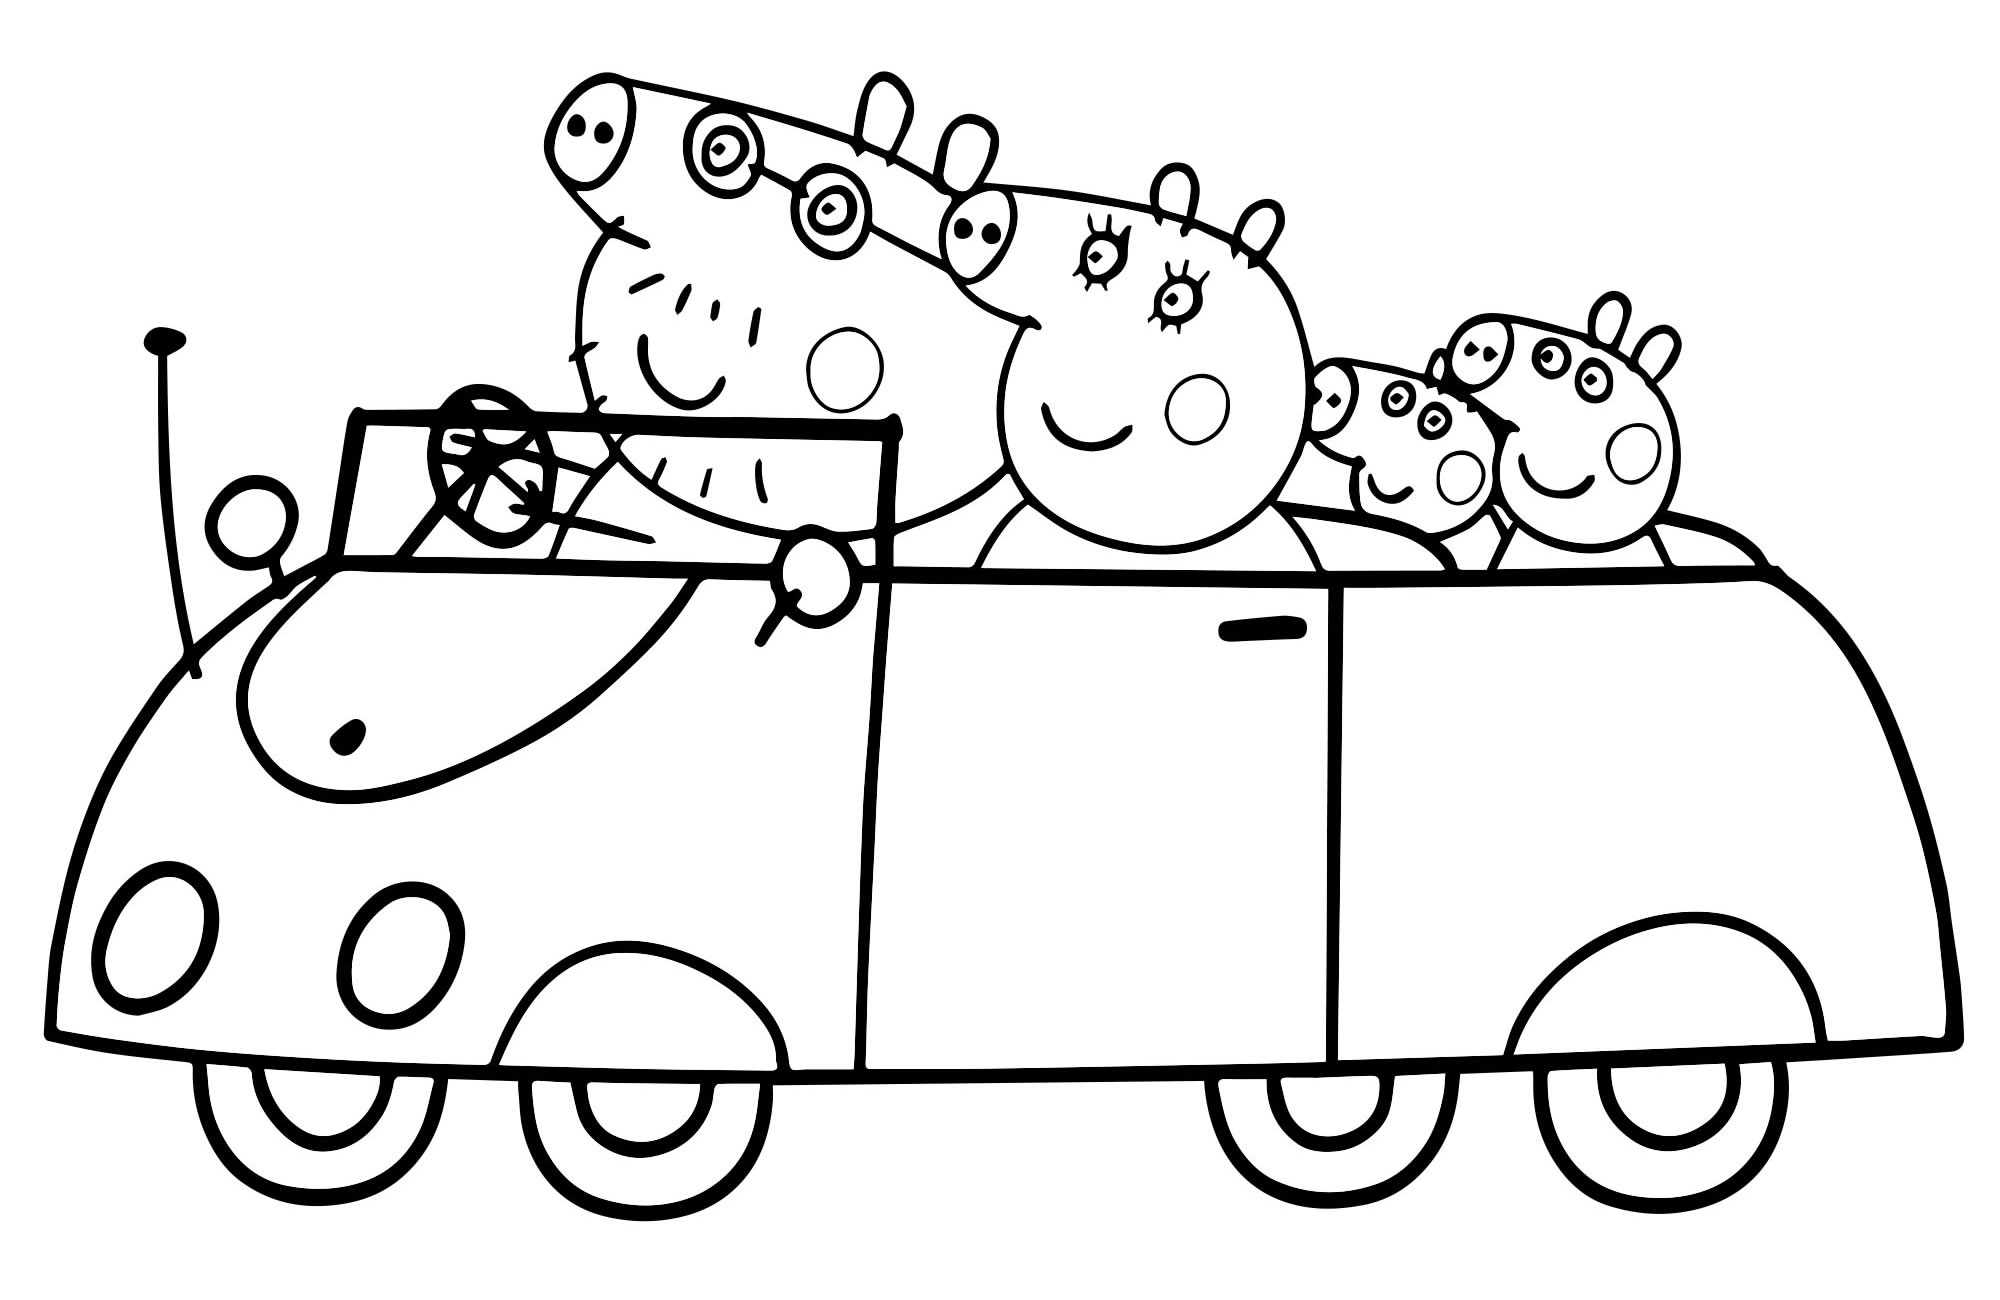 Раскраска Пеппа с семьей на пикнике, скачать и распечатать раскраску раздела Свинка Пеппа